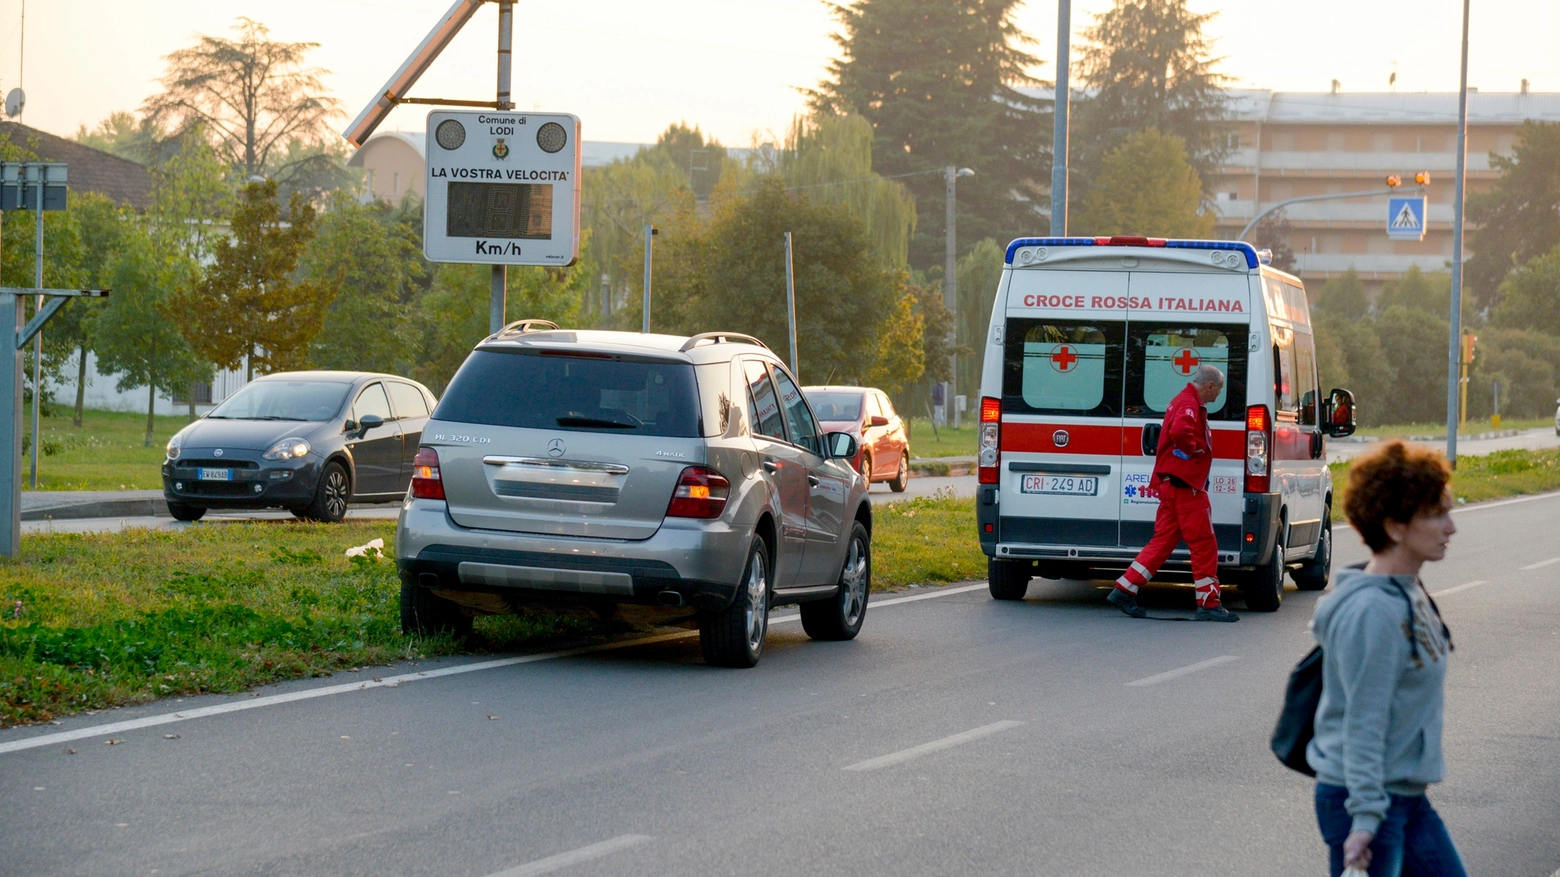 L'ambulanza della Croce Rossa giunta sul posto (Cavalleri)